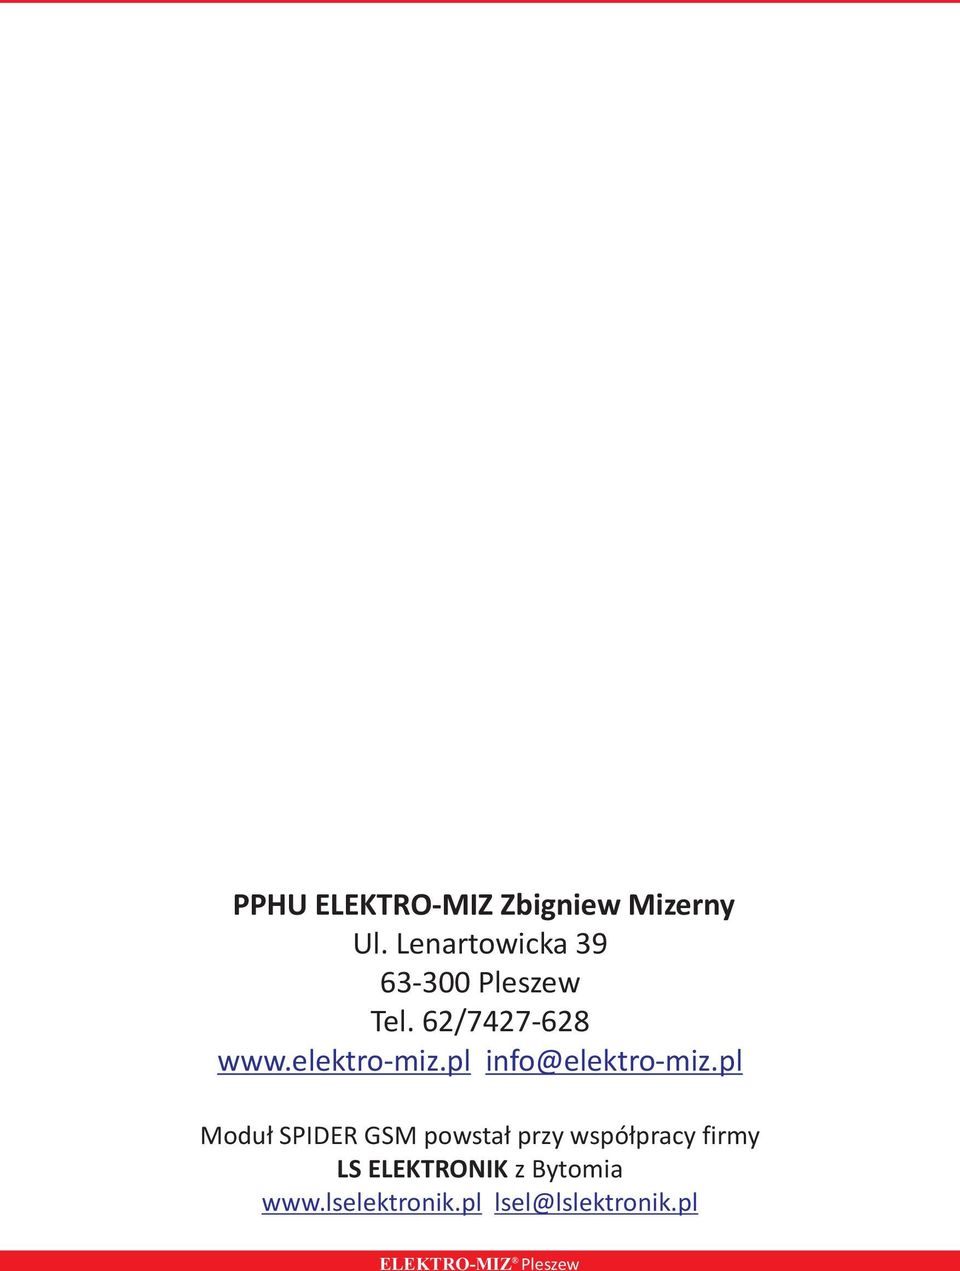 elektro-miz.pl info@elektro-miz.